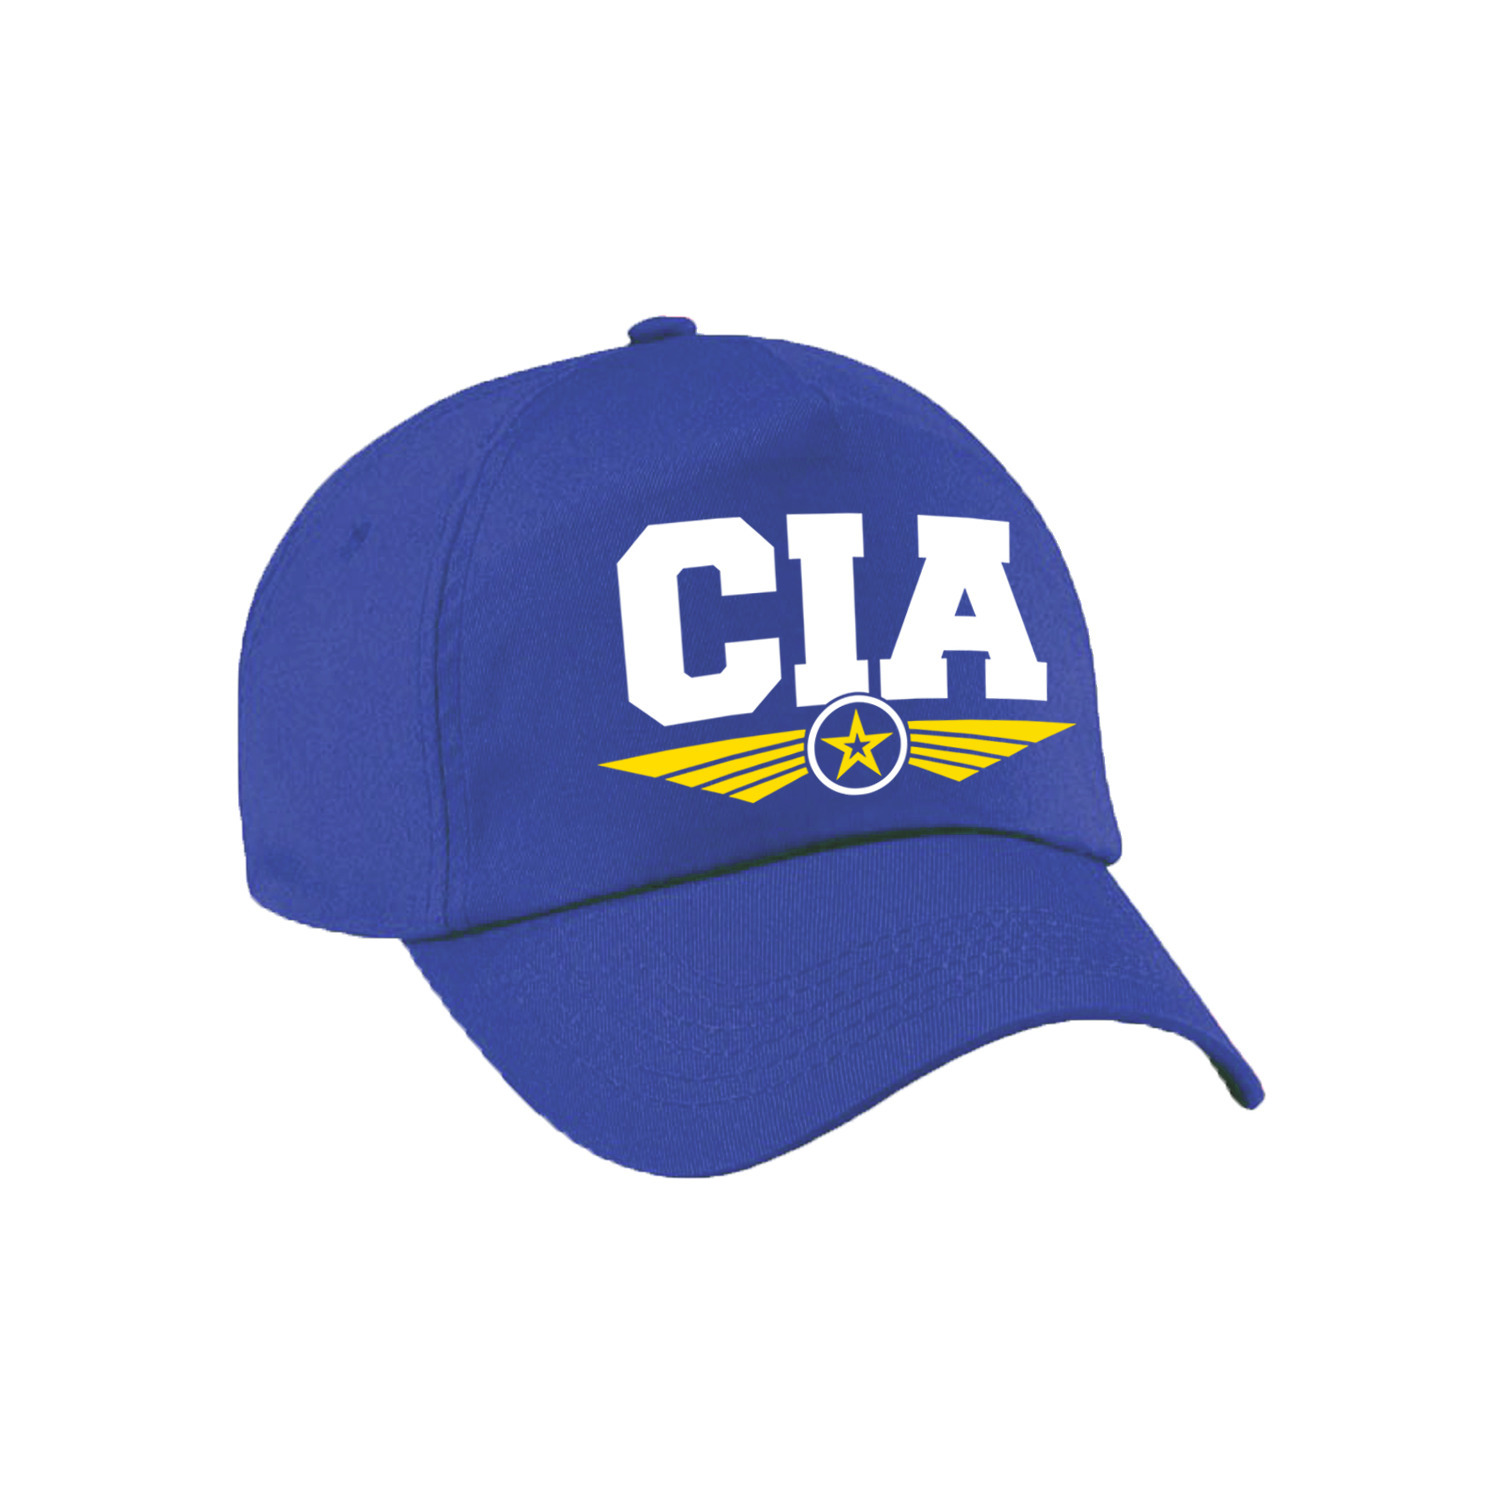 CIA agent tekst pet-baseball cap blauw voor kinderen